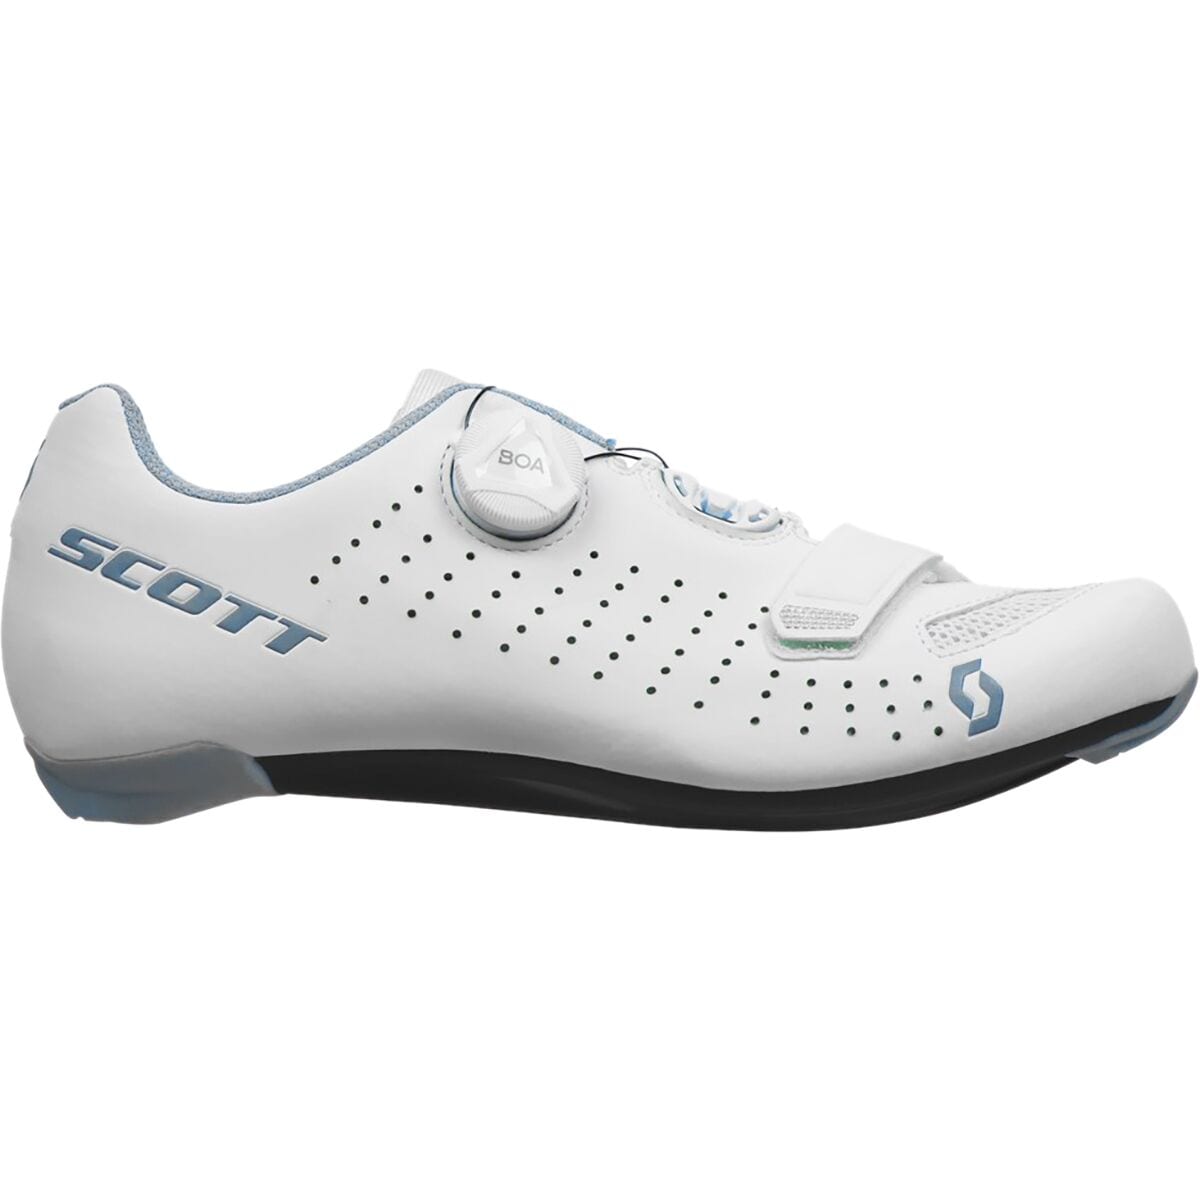 Scott Road Comp BOA Cycling Shoe - Women's